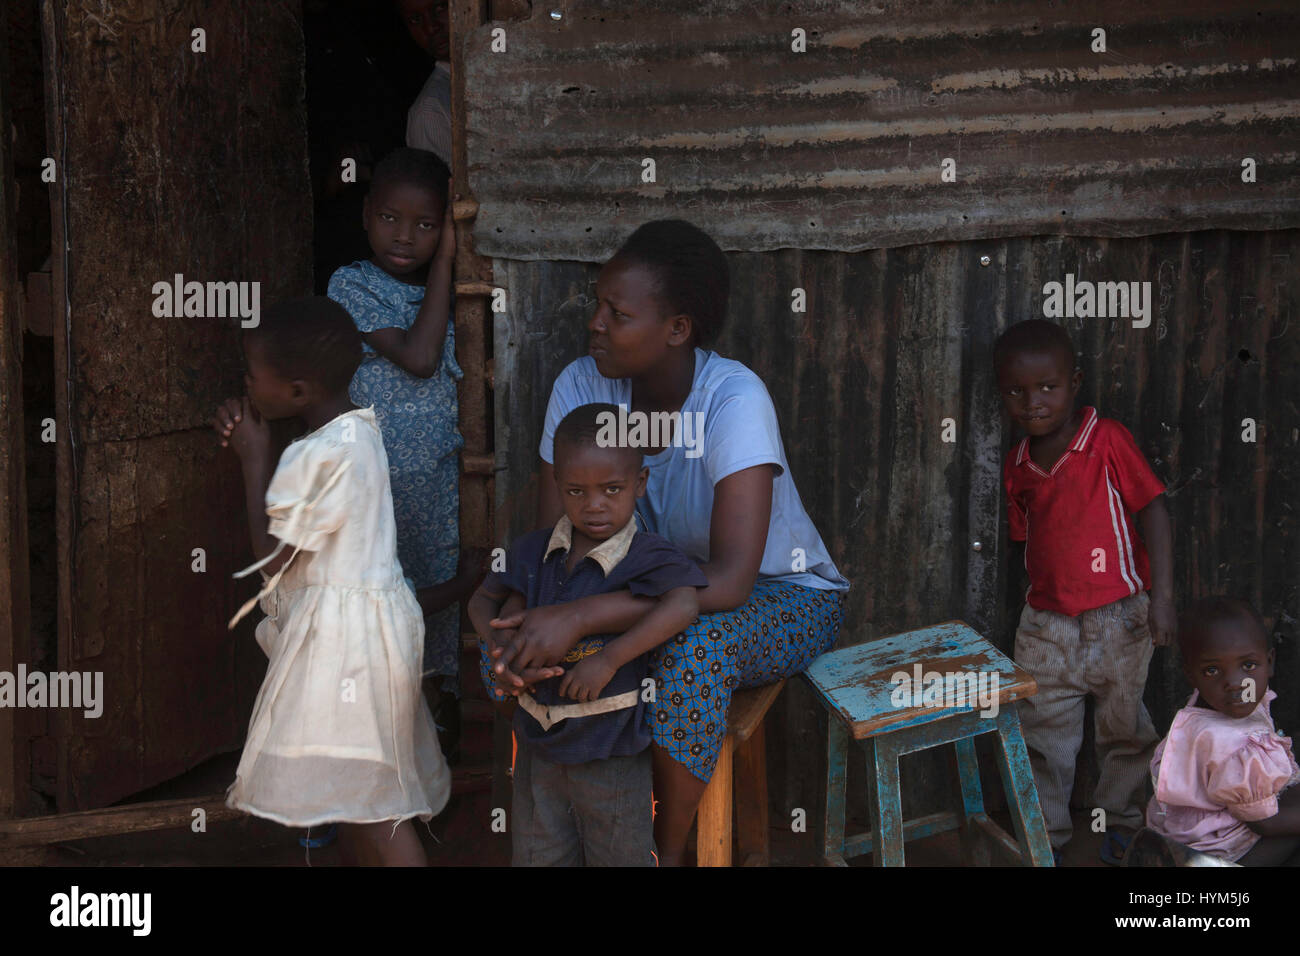 People sitting in the street in Kibera slums, Nairobi, Kenya, East Africa Stock Photo